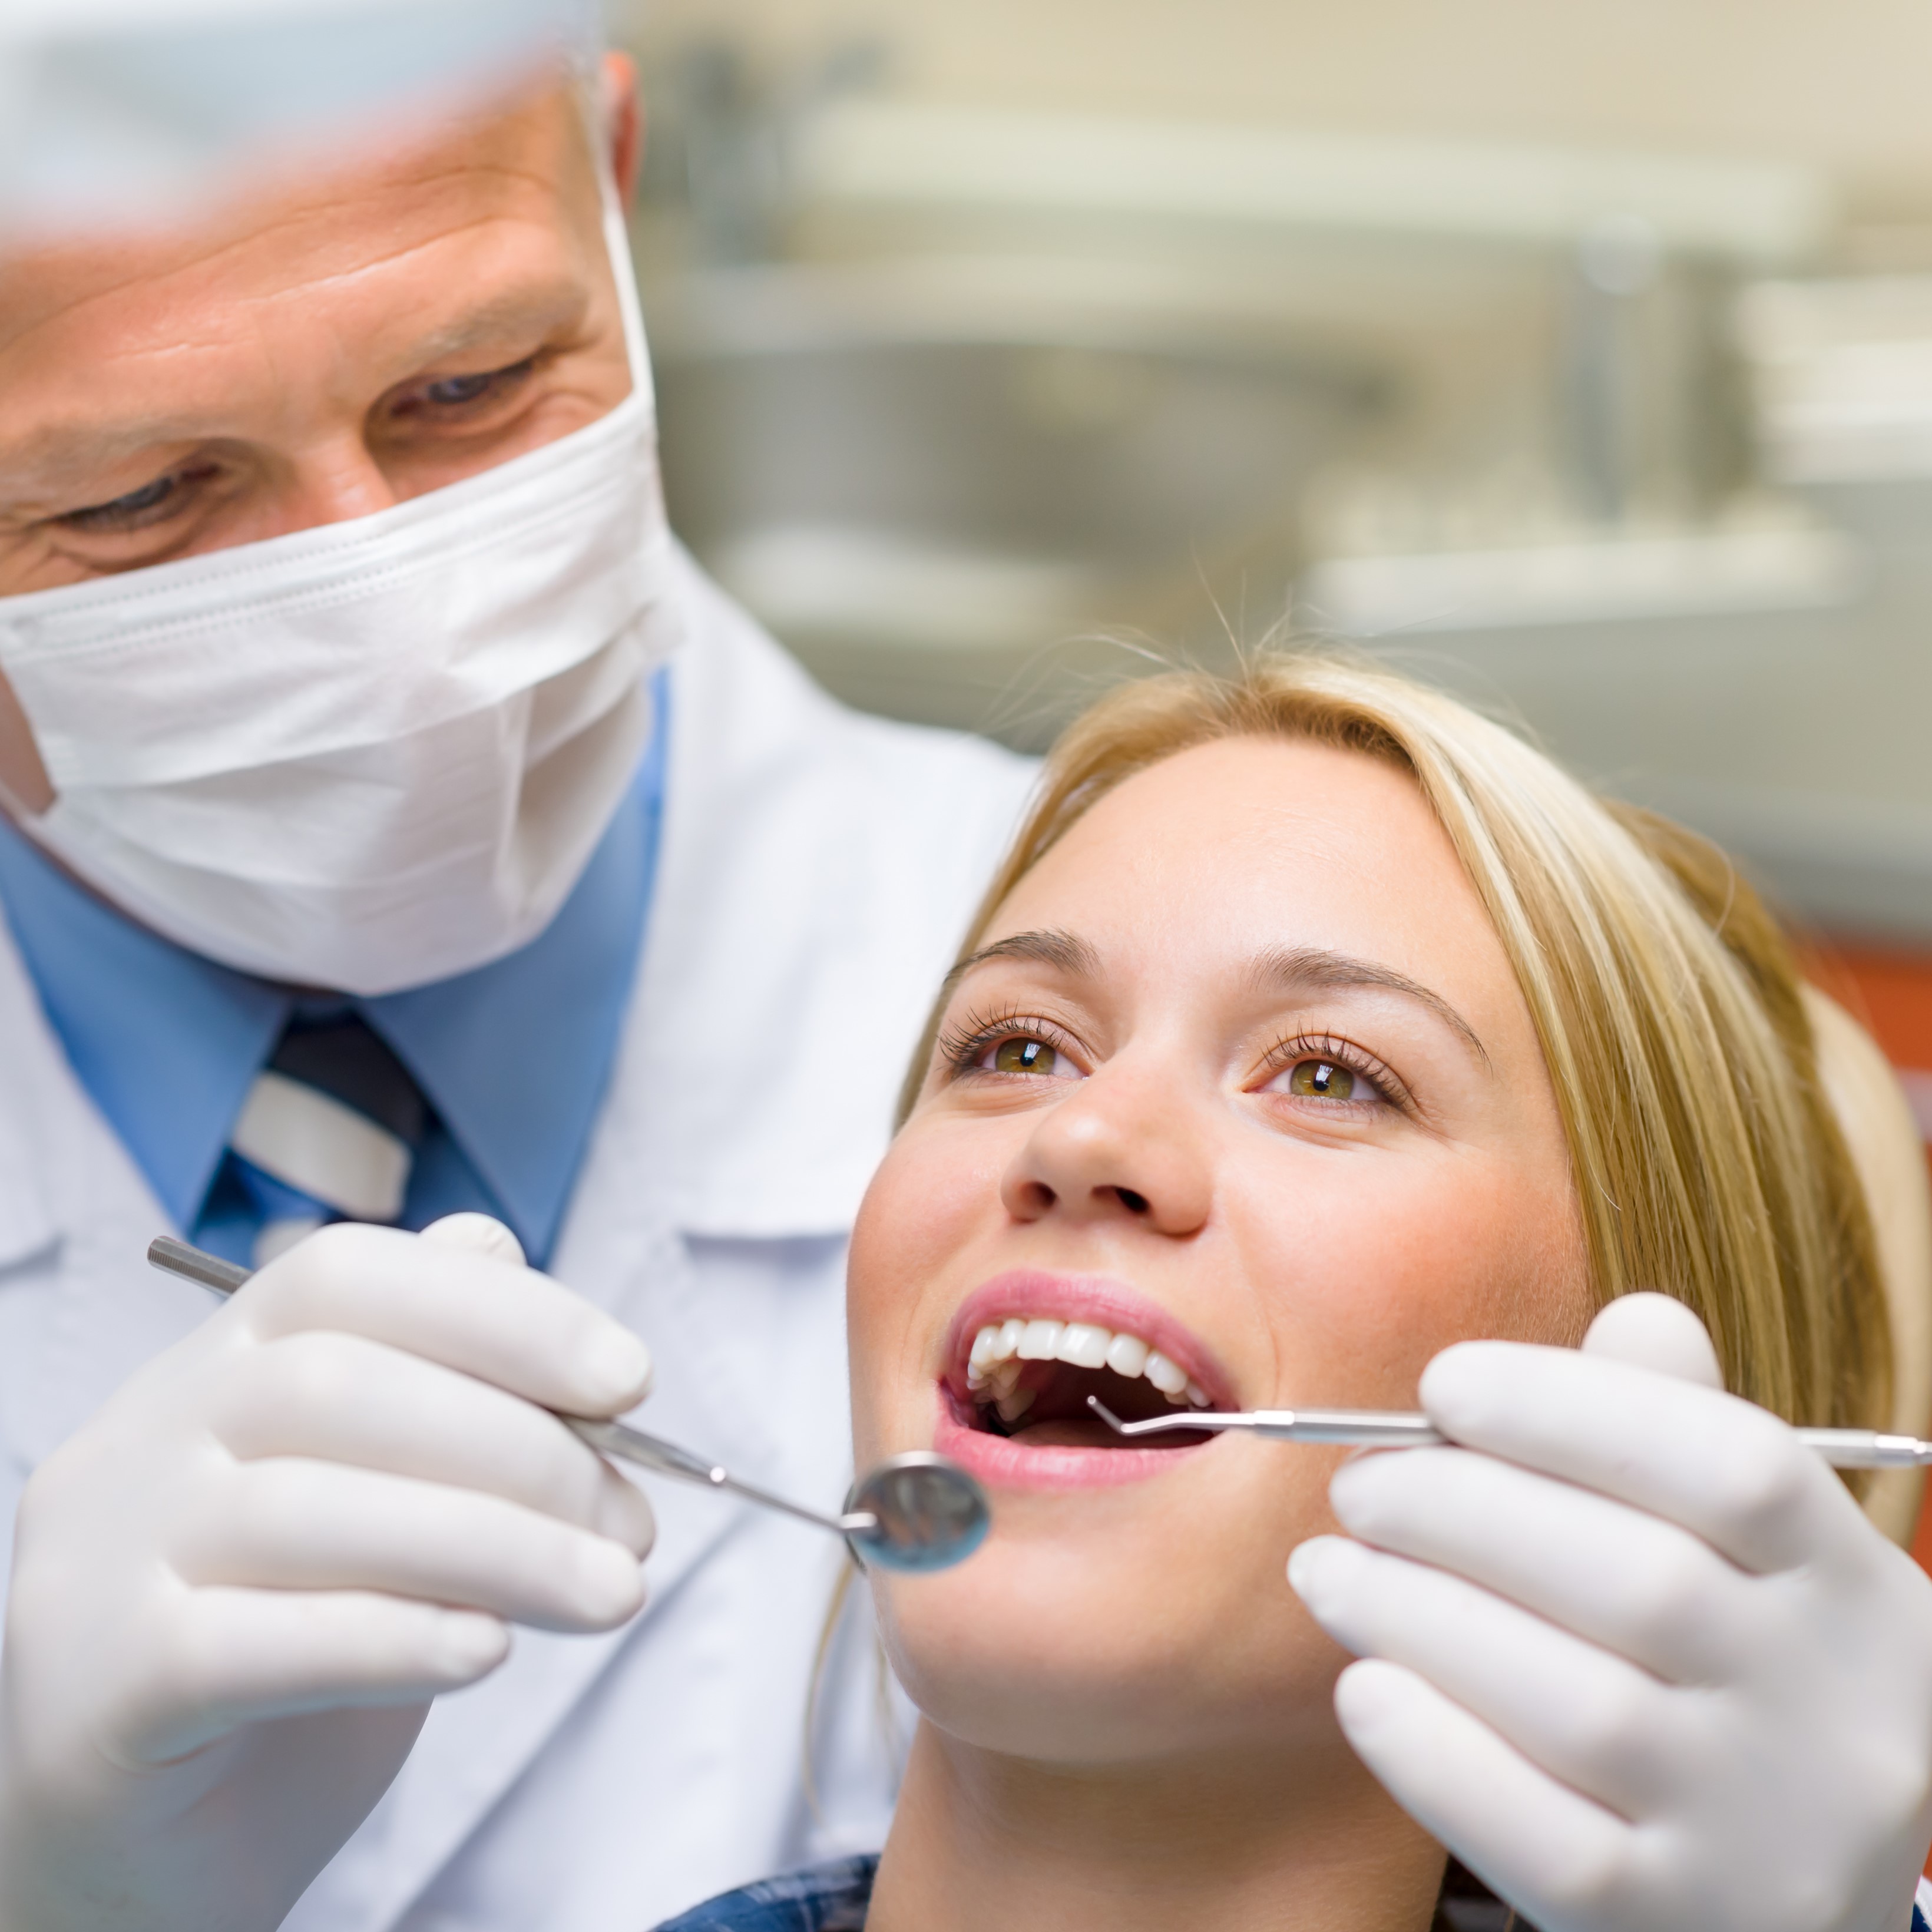 Zahnarzt behandelt Patientin / Credit: shutterstock.com/CandyBox_Images